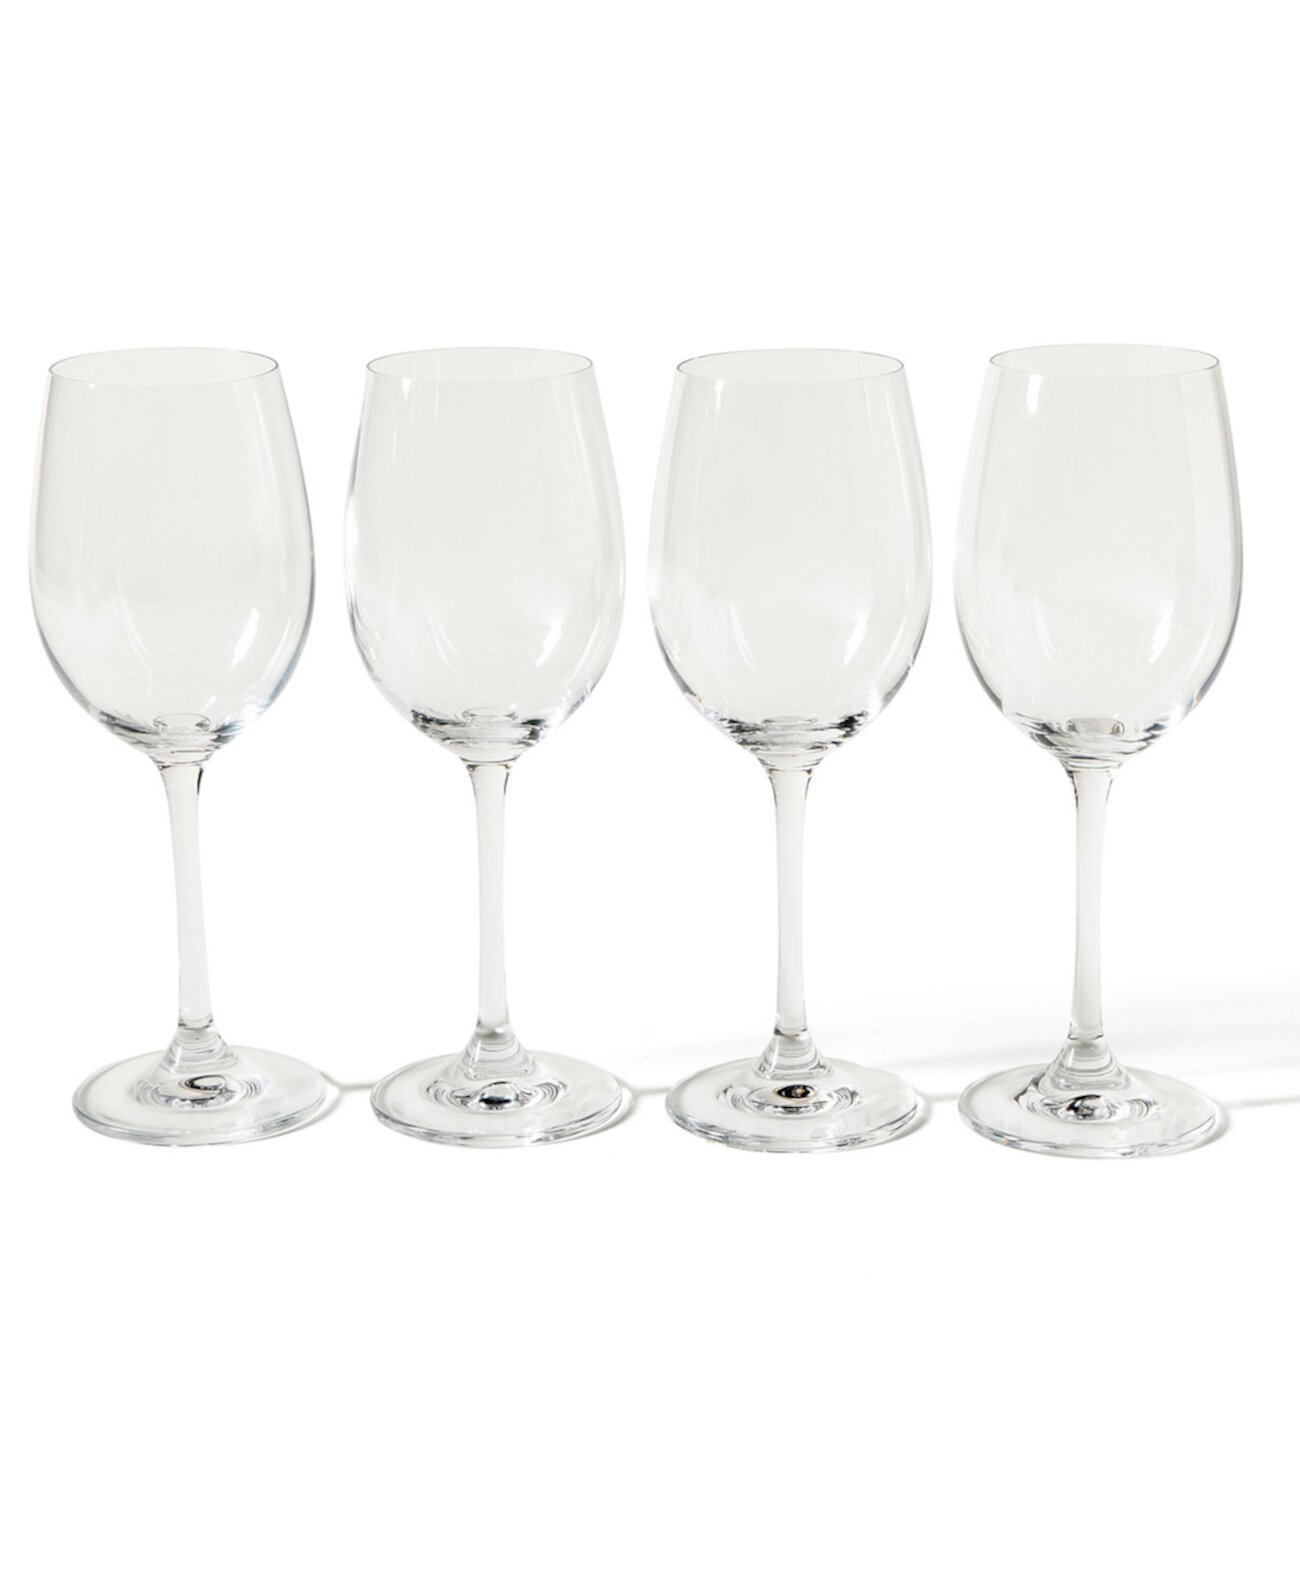 Vivica Stemmed White Wine Glass, Set of 4 Martha Stewart